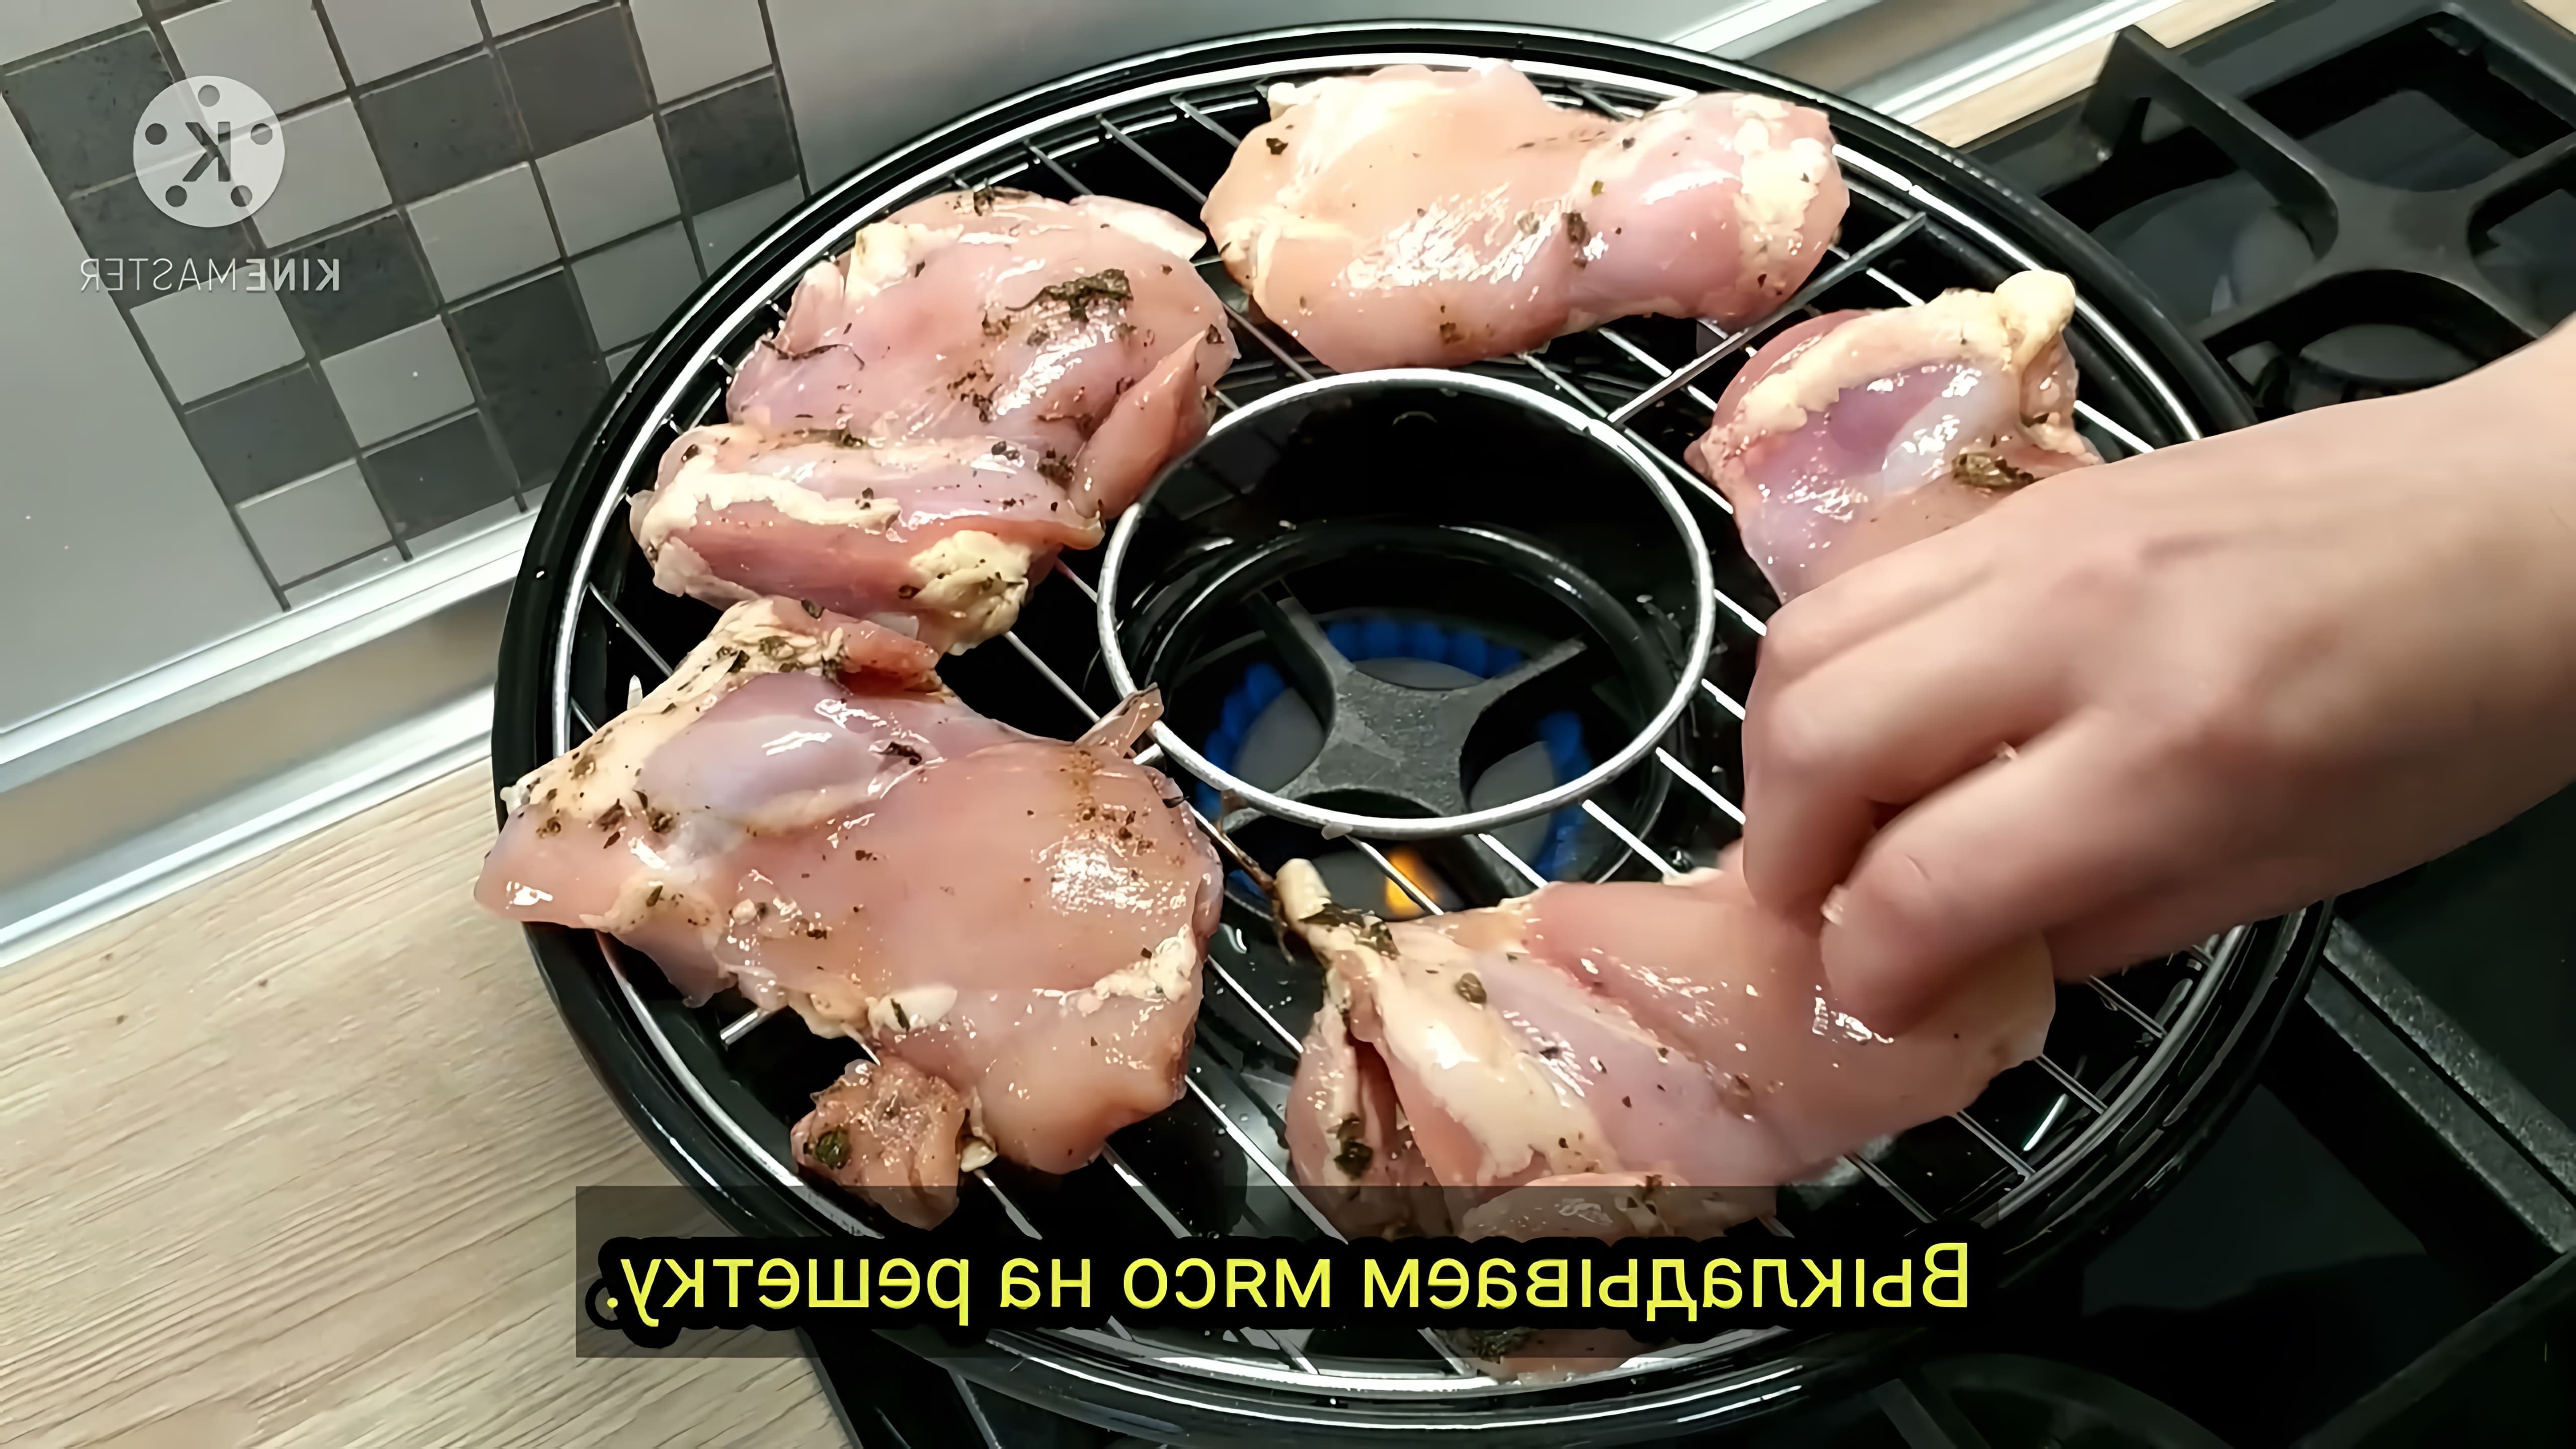 В этом видео-ролике мы увидим, как приготовить курицу на сковороде газ-гриль